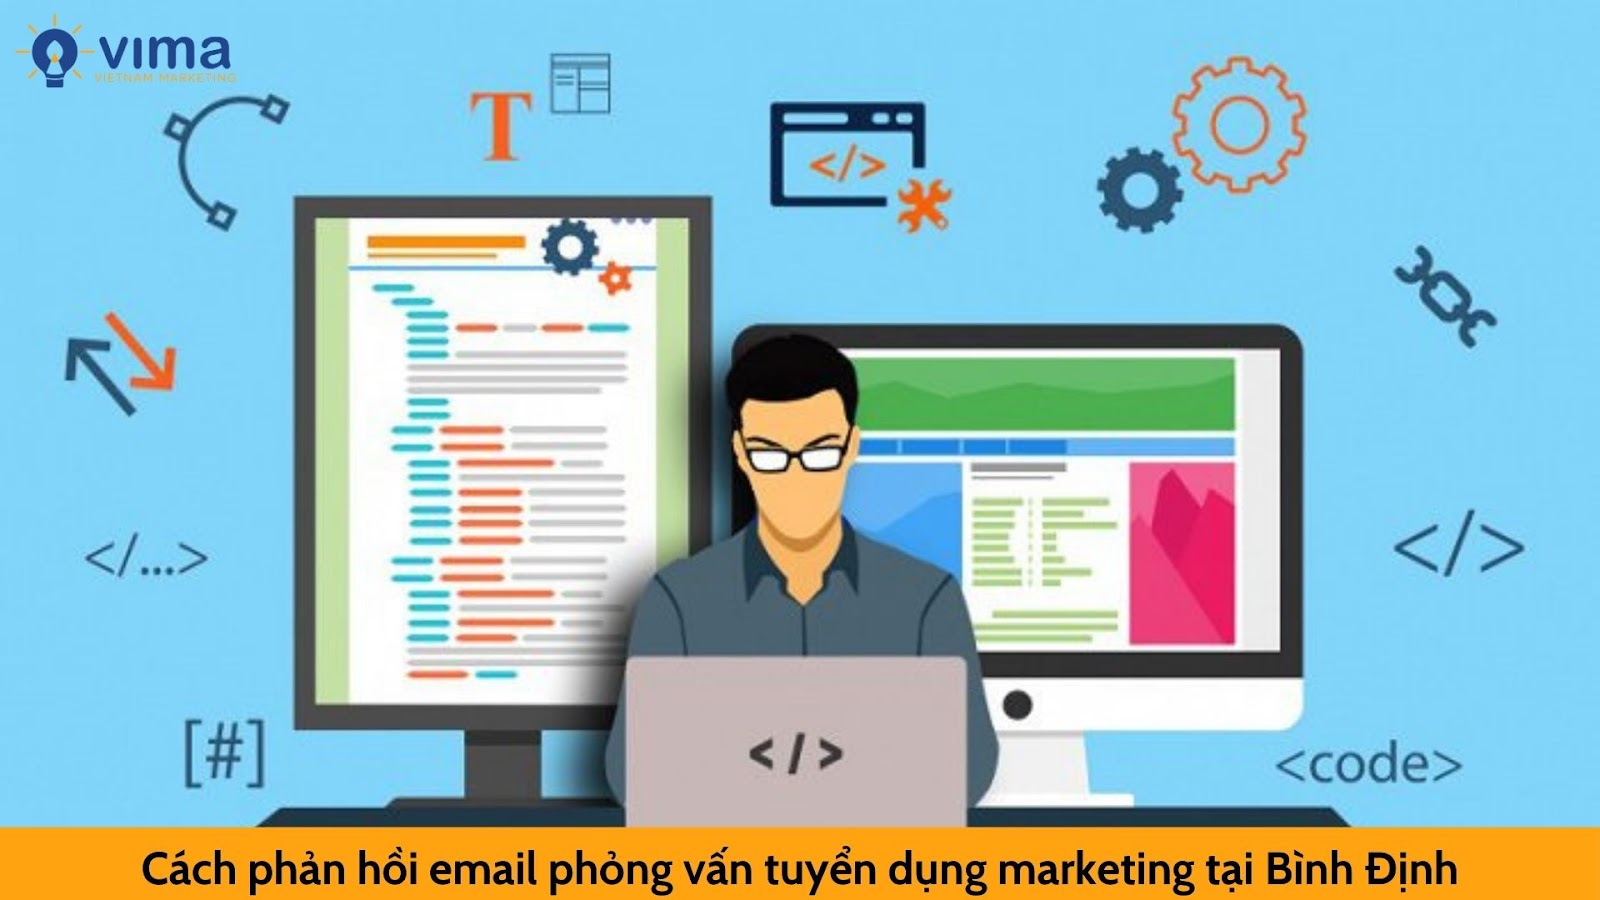 Cách phản hồi email phỏng vấn tuyển dụng marketing tại Bình Định